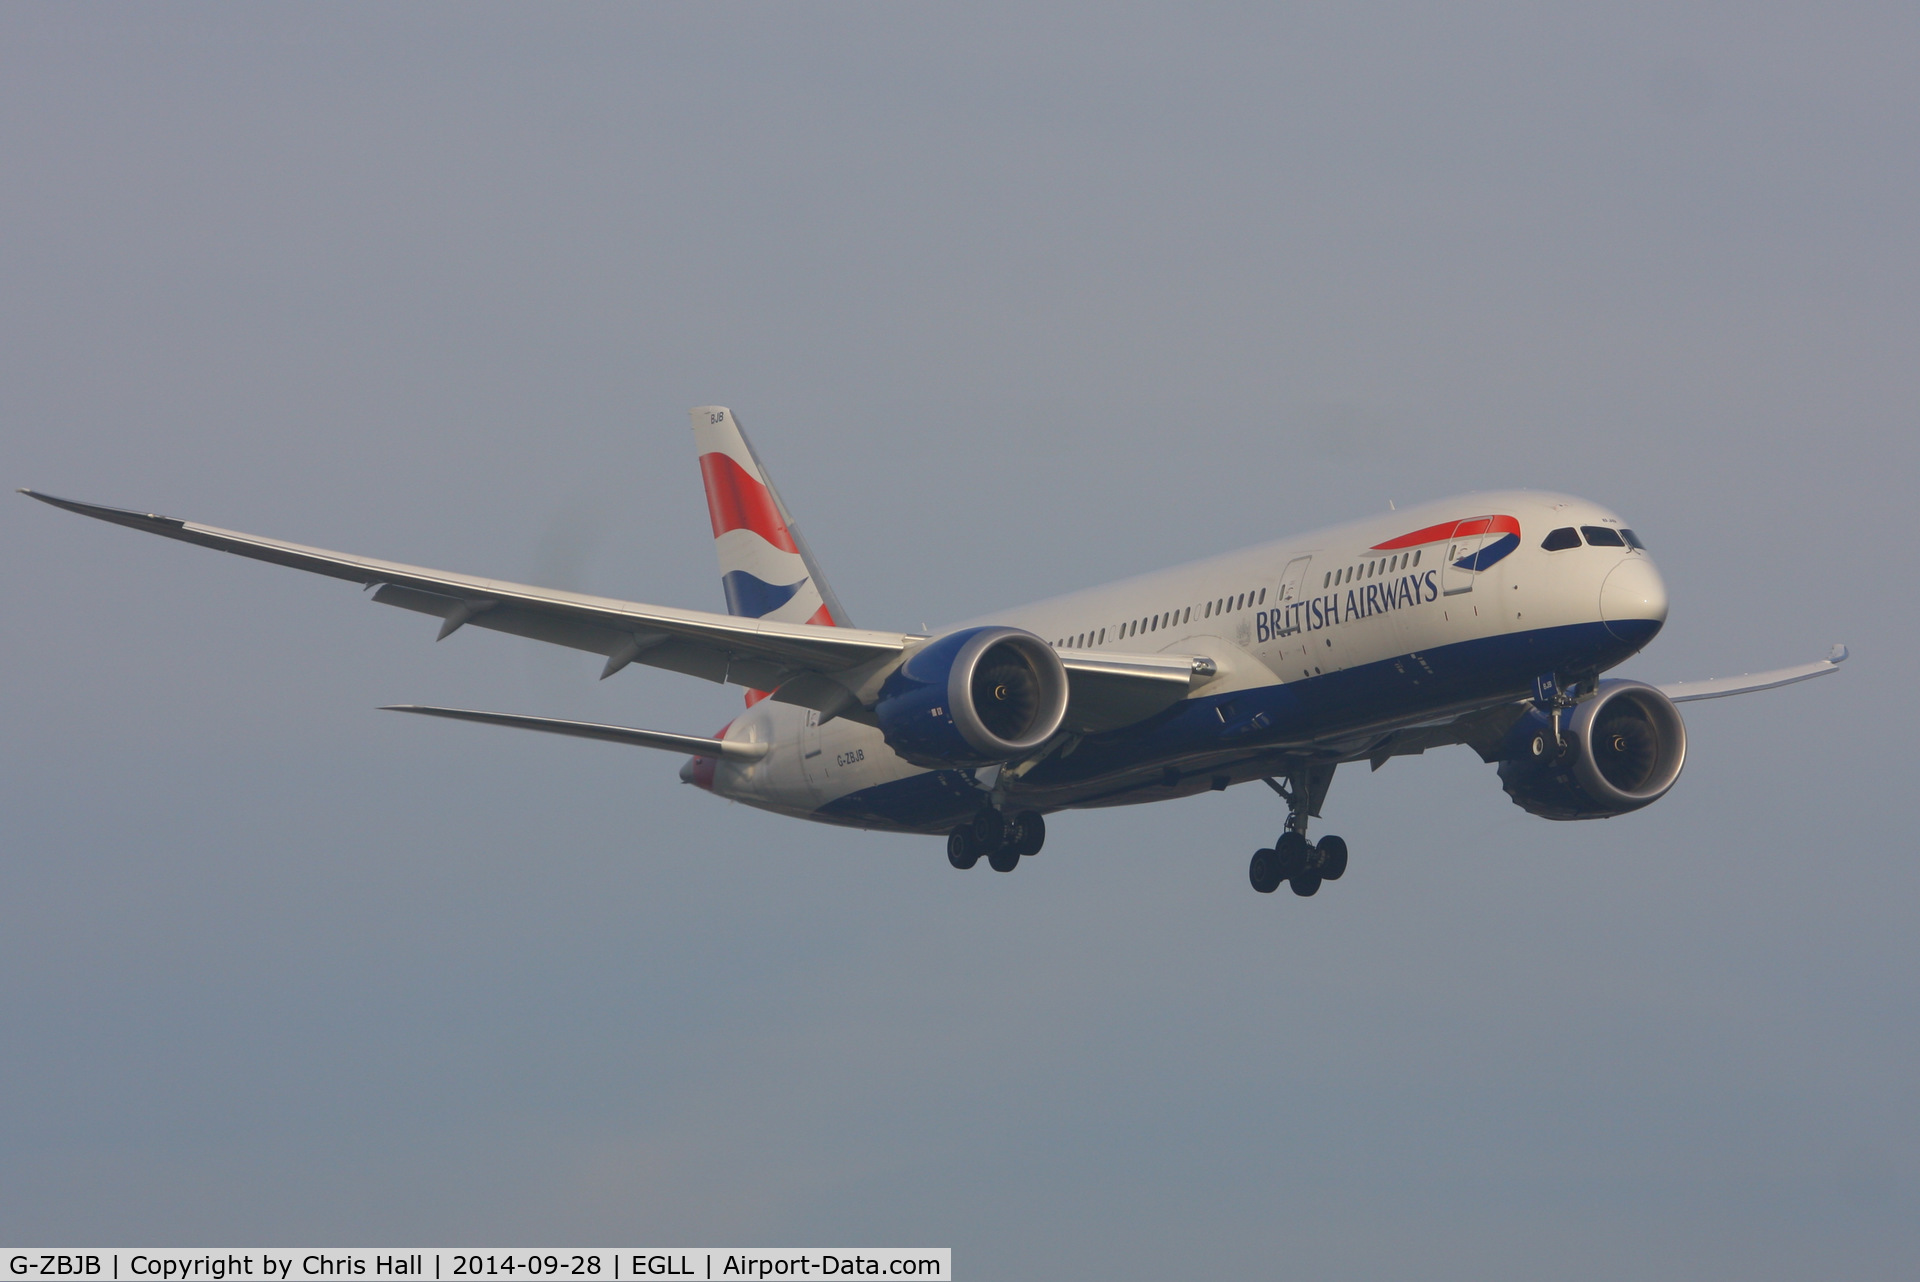 G-ZBJB, 2013 Boeing 787-8 Dreamliner C/N 38610, British Airways